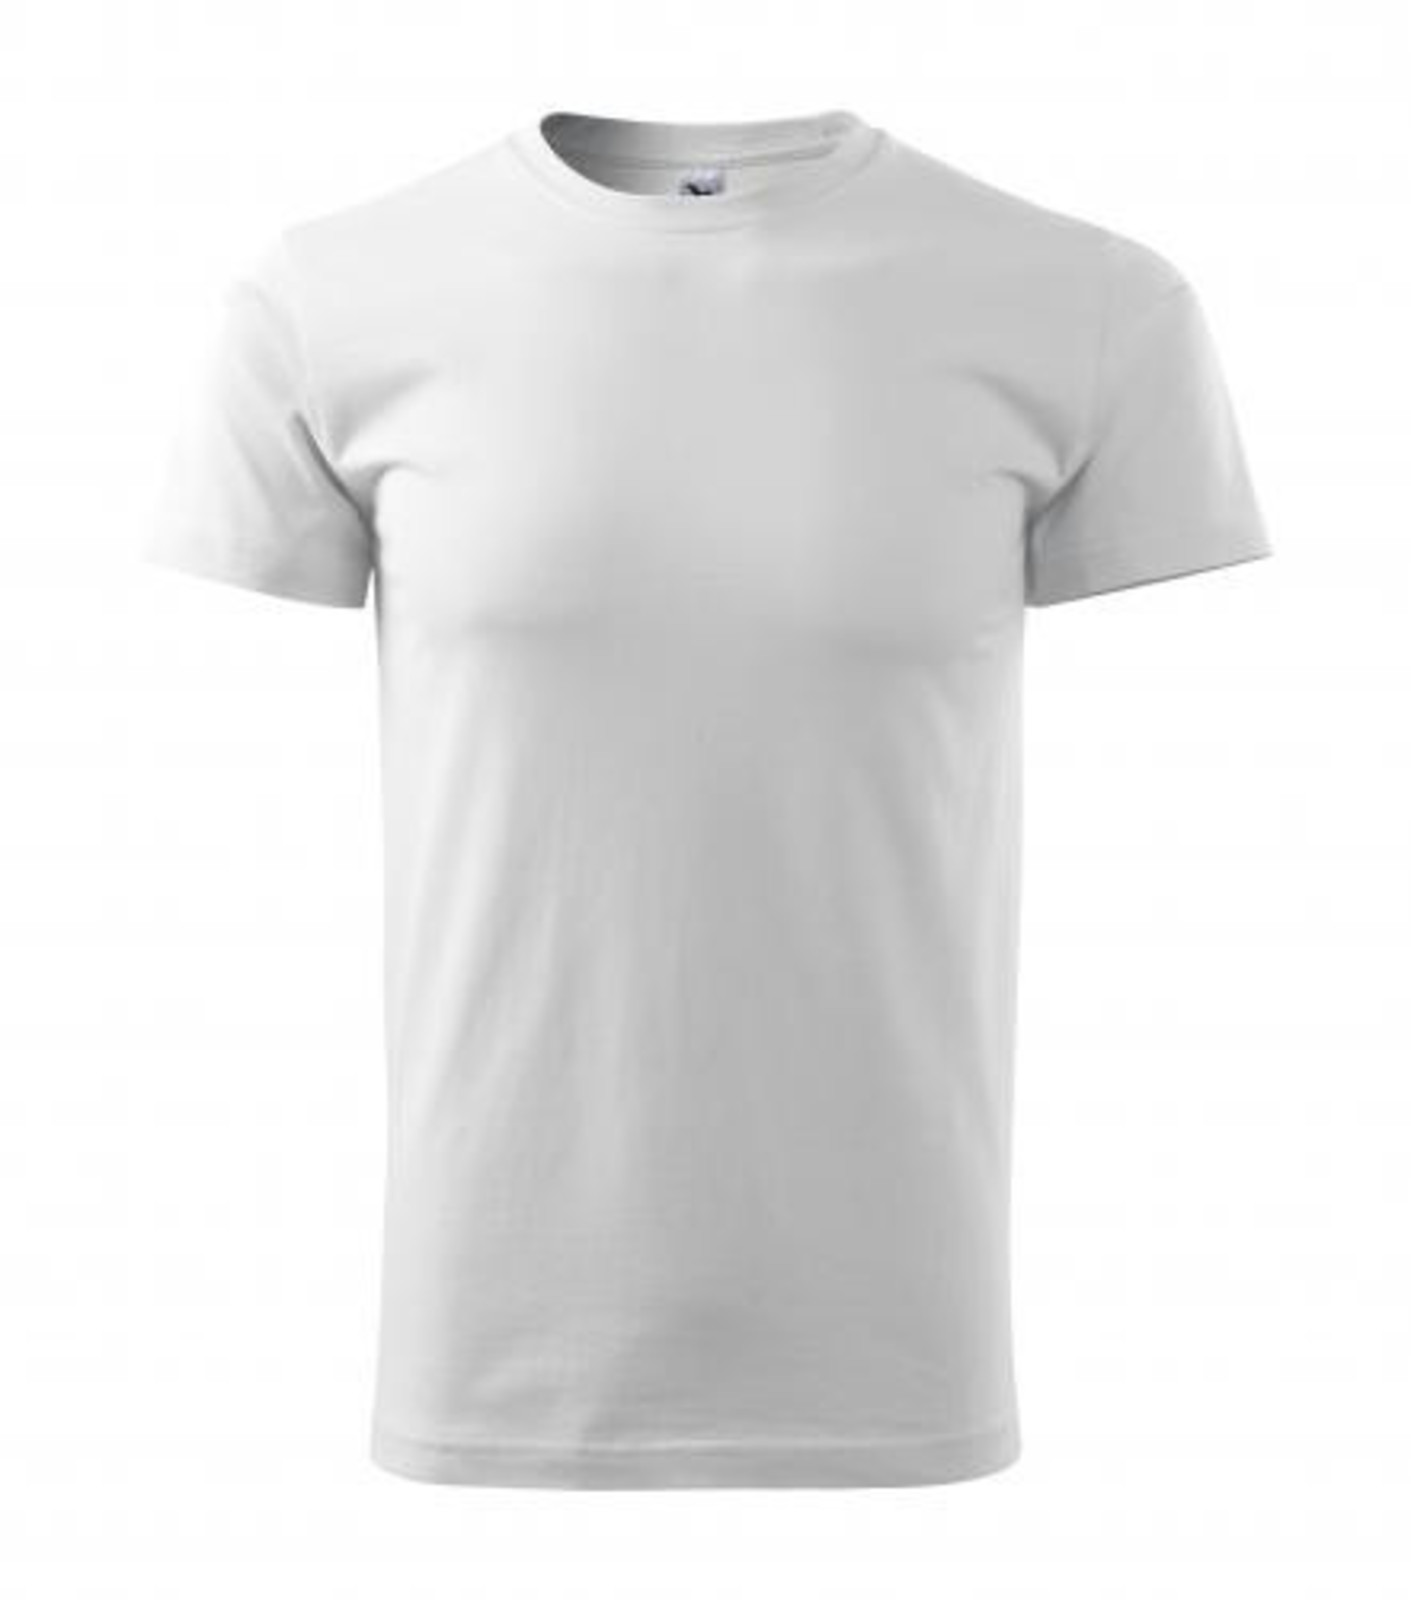 Pánske tričko Malfini Basic 129 - veľkosť: 5XL, farba: biela